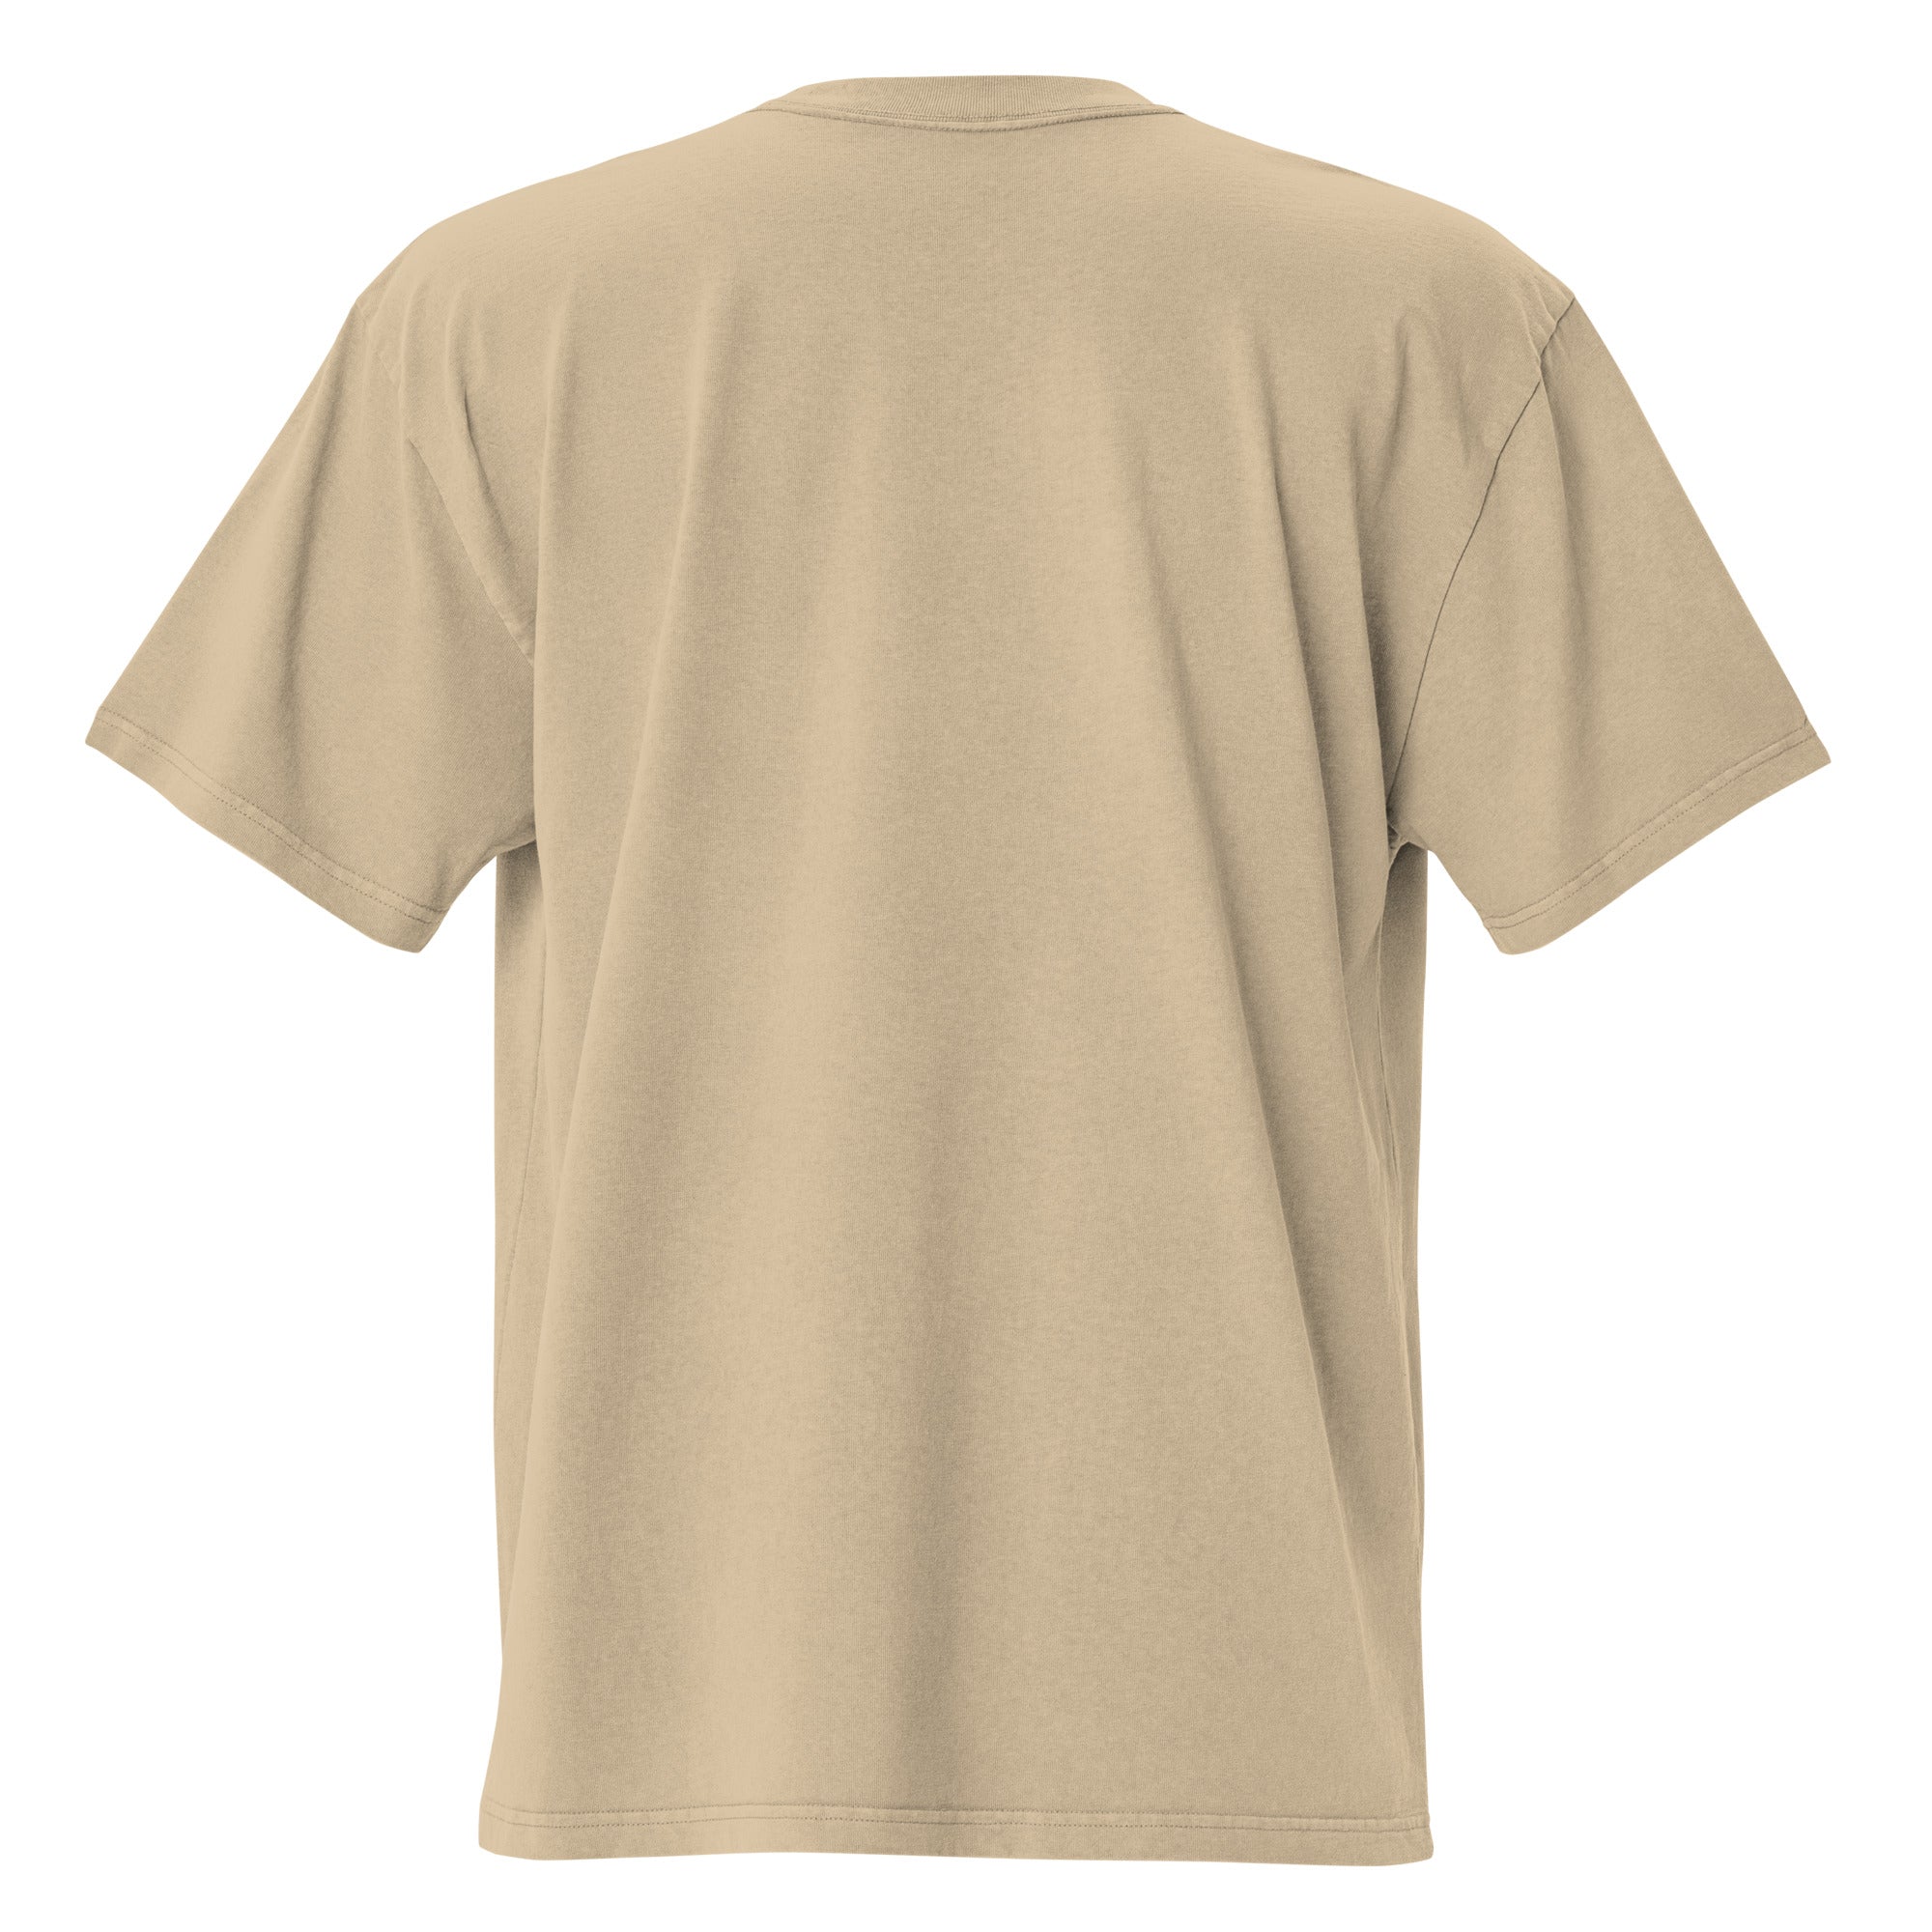 T-shirt oversize épais en coton Keep The Sea Clean blanc grand motif brodé